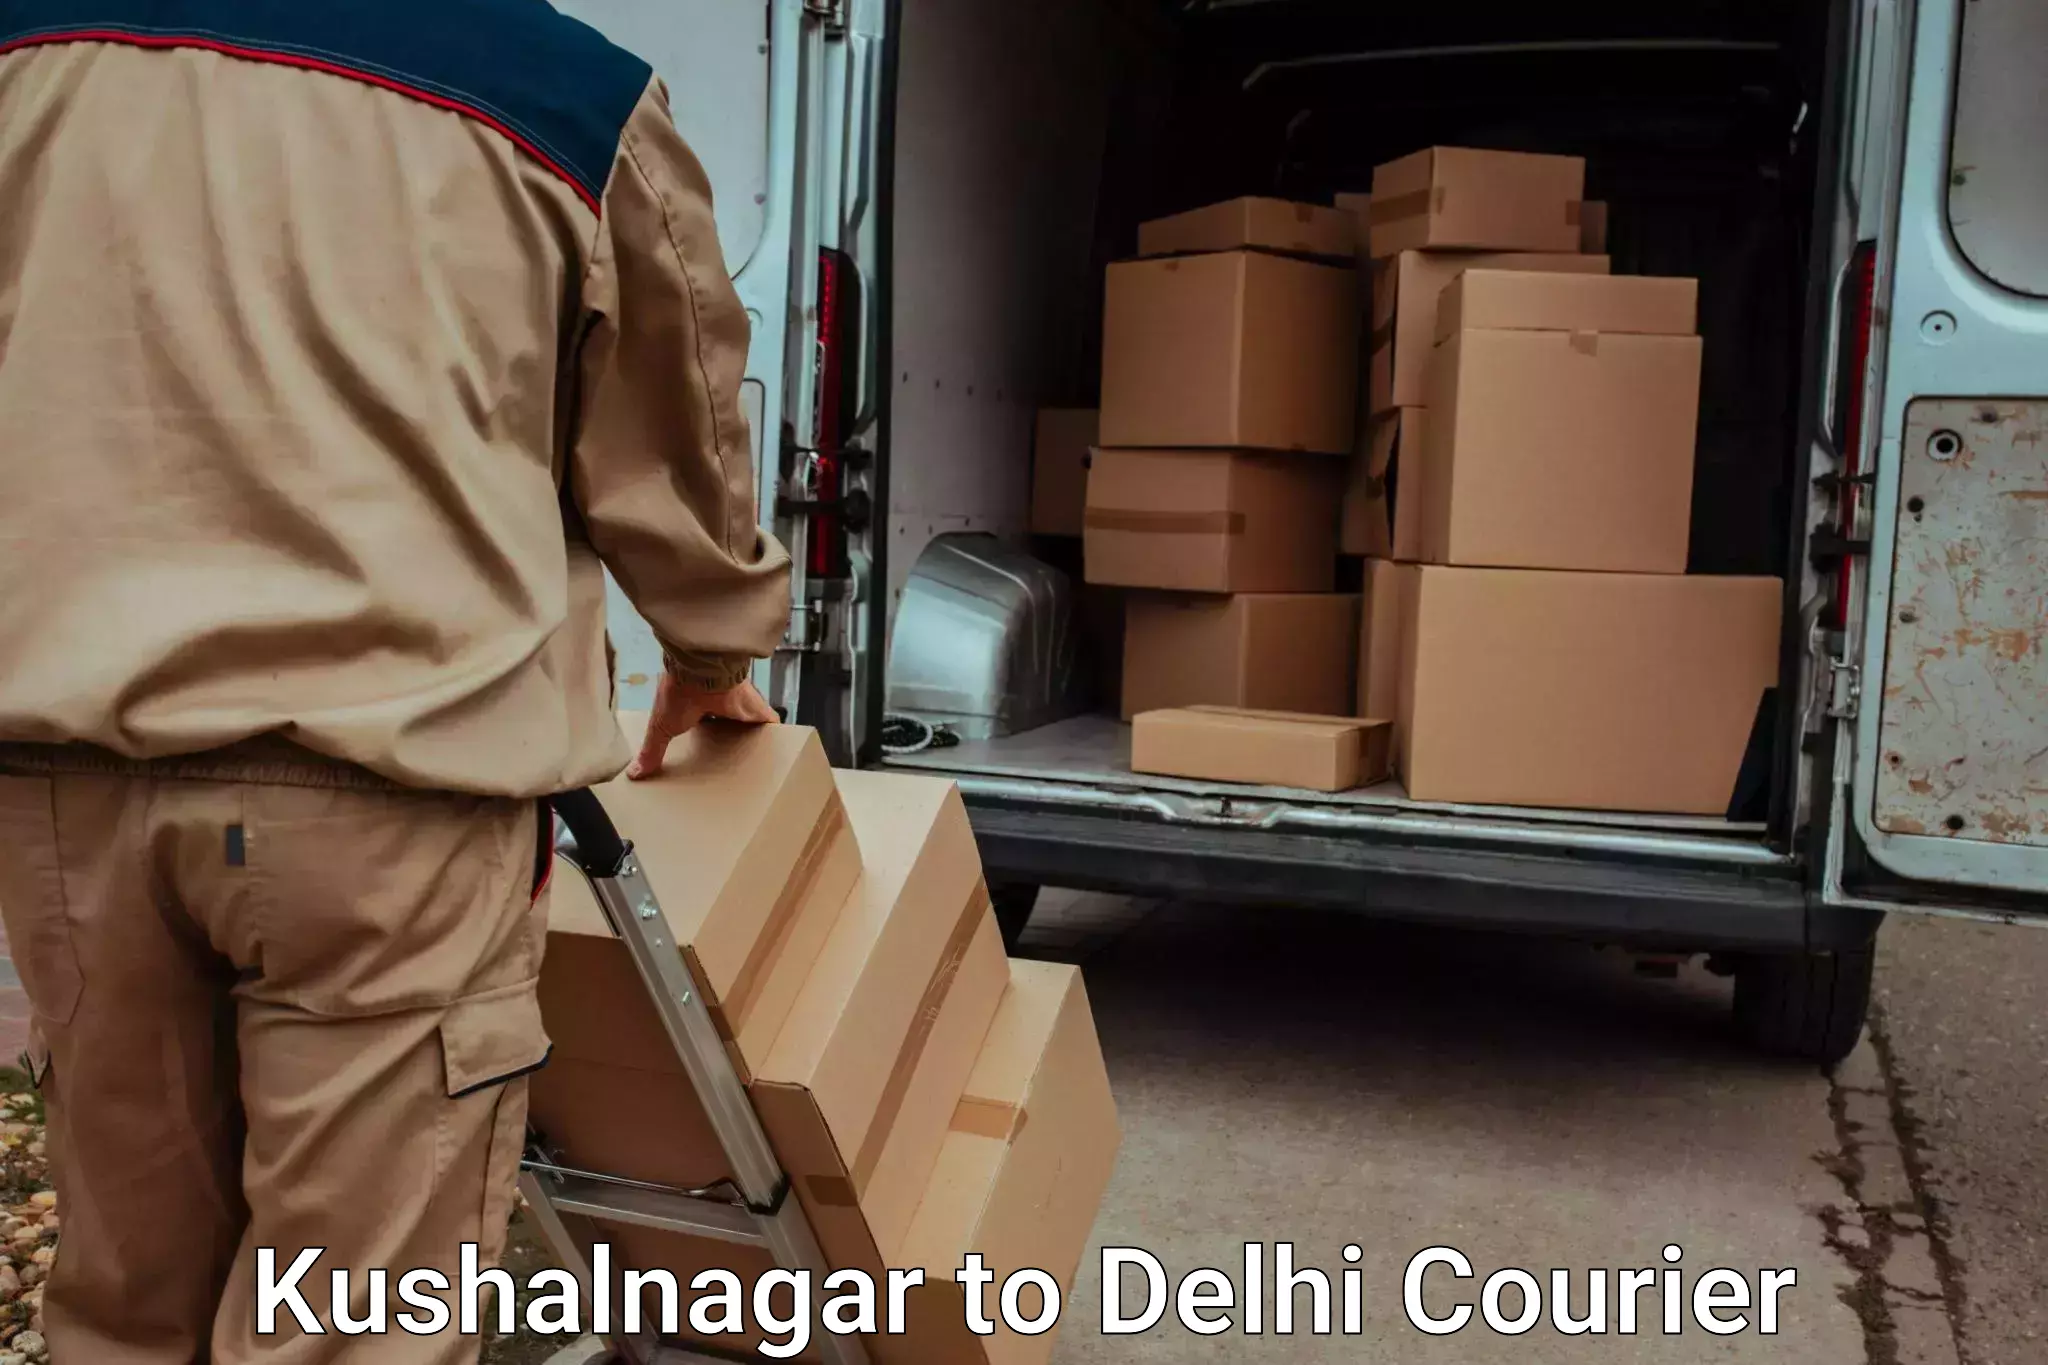 Furniture moving experts Kushalnagar to Lodhi Road